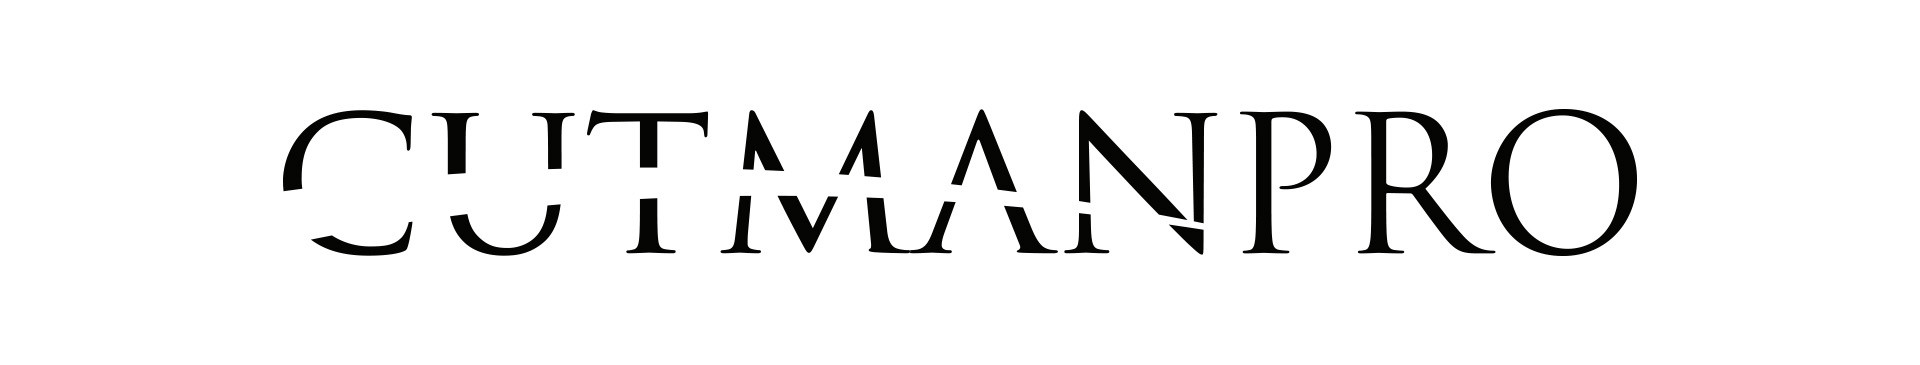 2020_04_sponsor_Cutman_logo.jpg